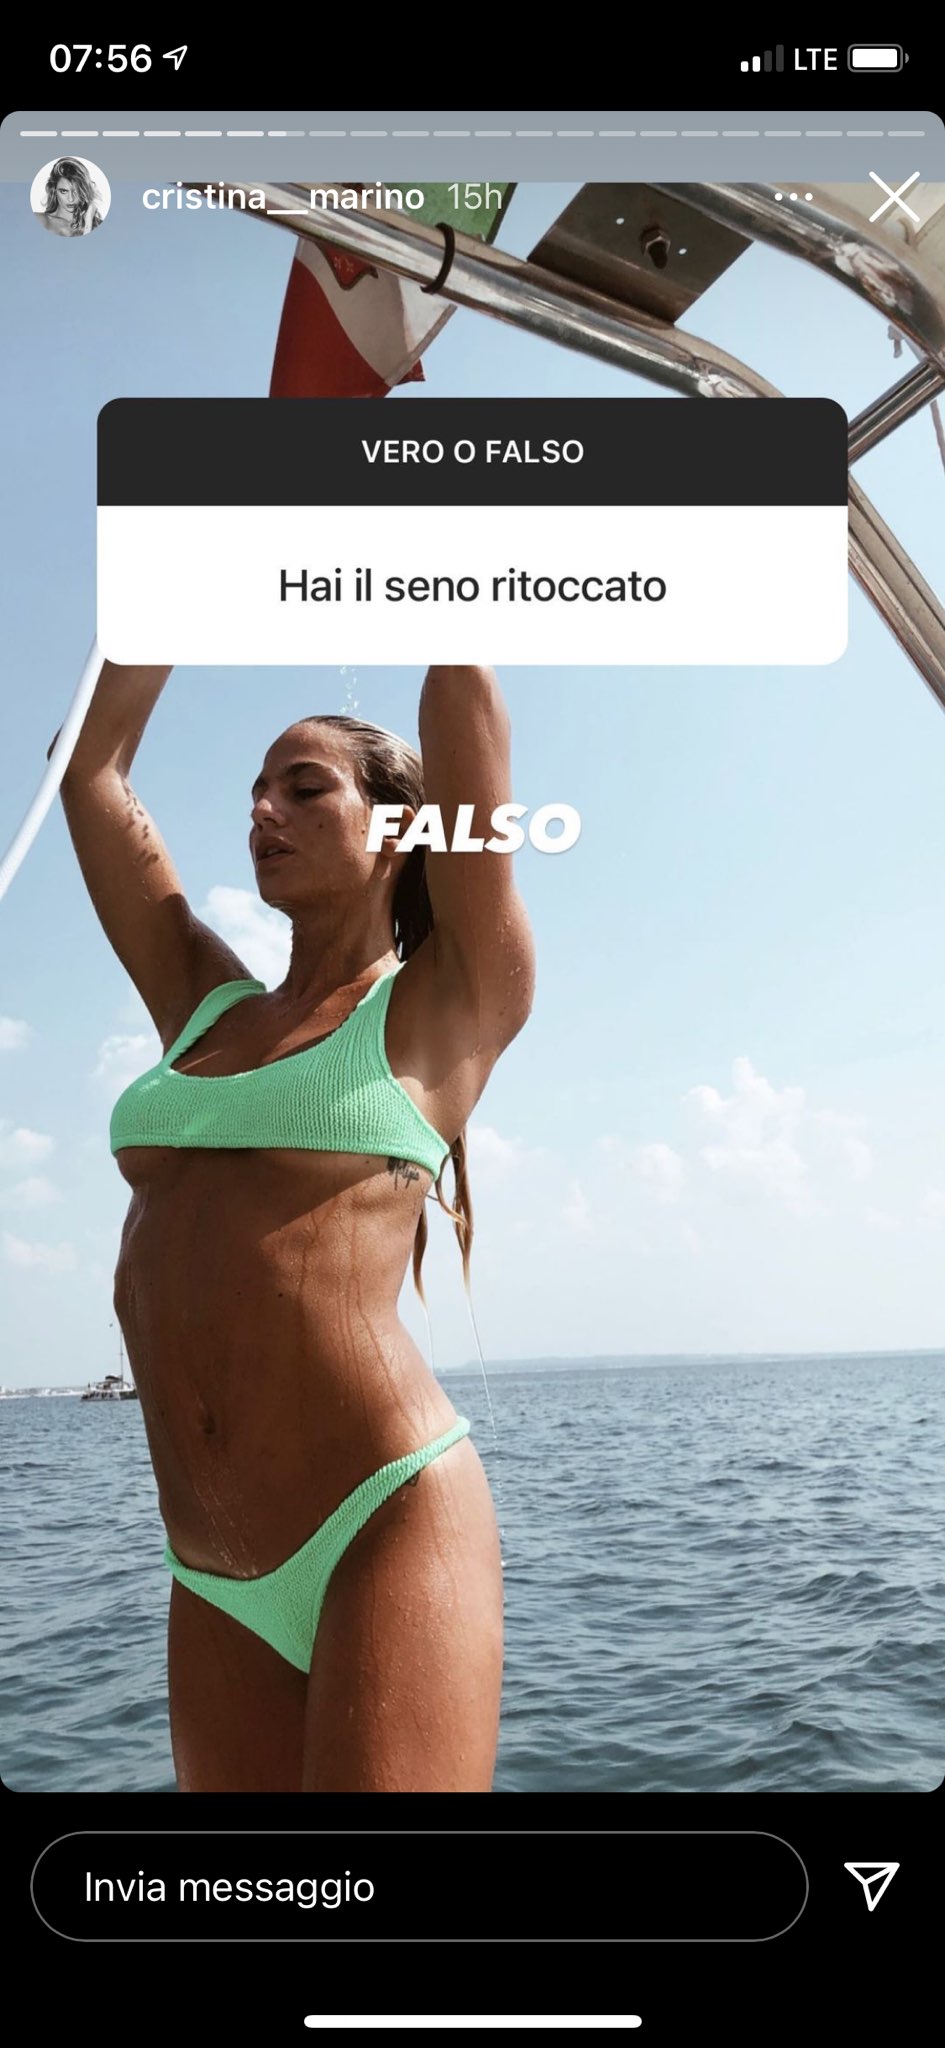 Cristina Marino sexy bollente barca seno rifatto falso